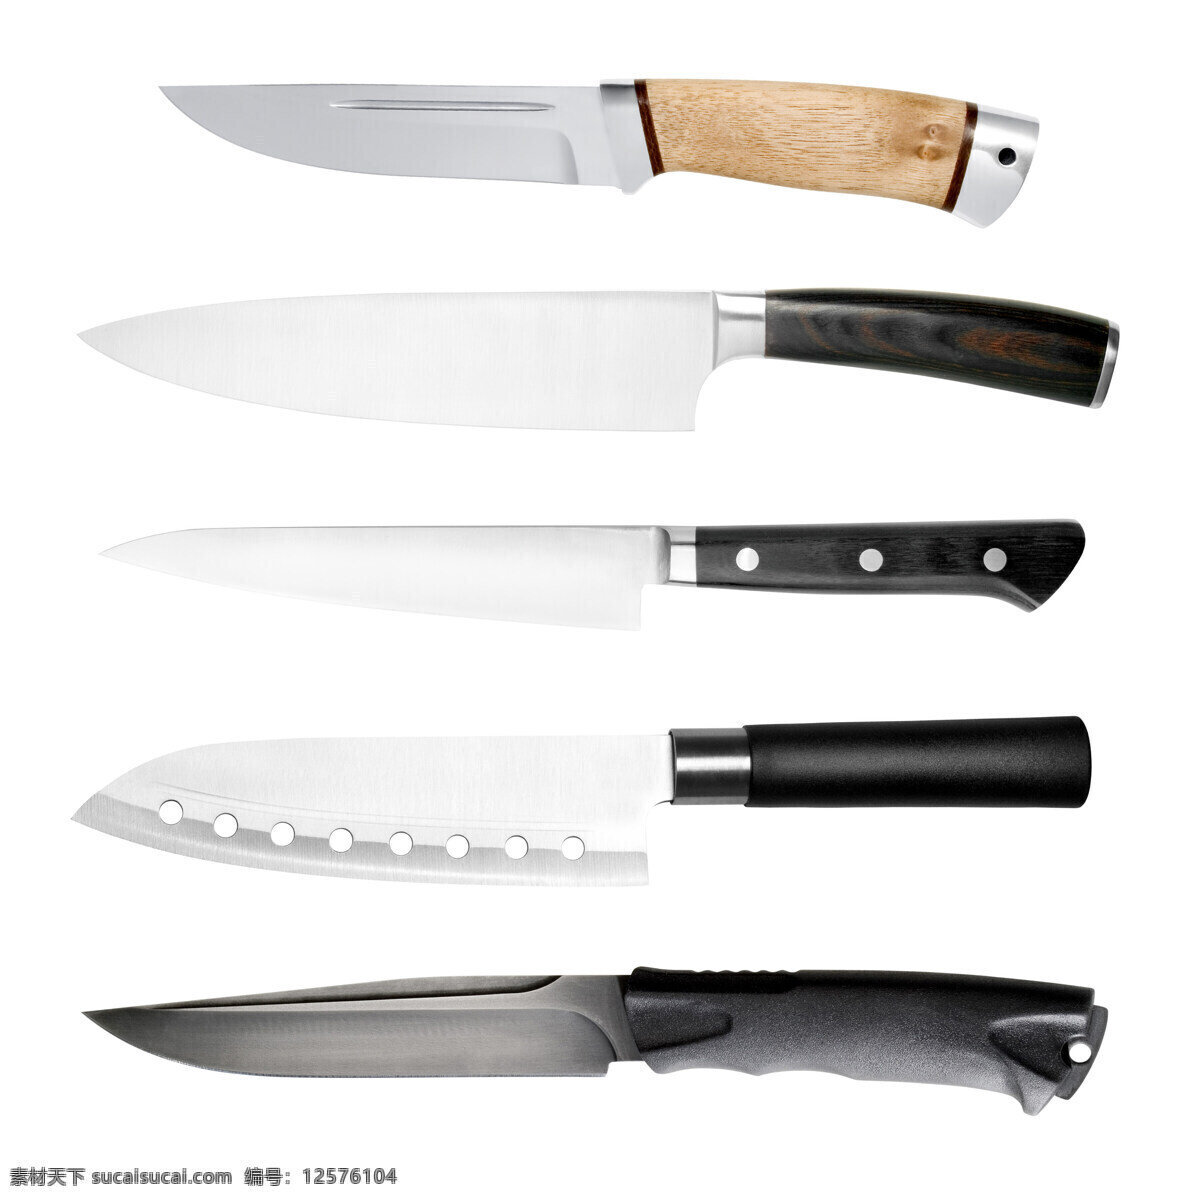 匕首菜刀摄影 匕首 菜刀 不锈钢刀具 厨房厨具 厨房用品 餐具厨具 餐饮美食 白色